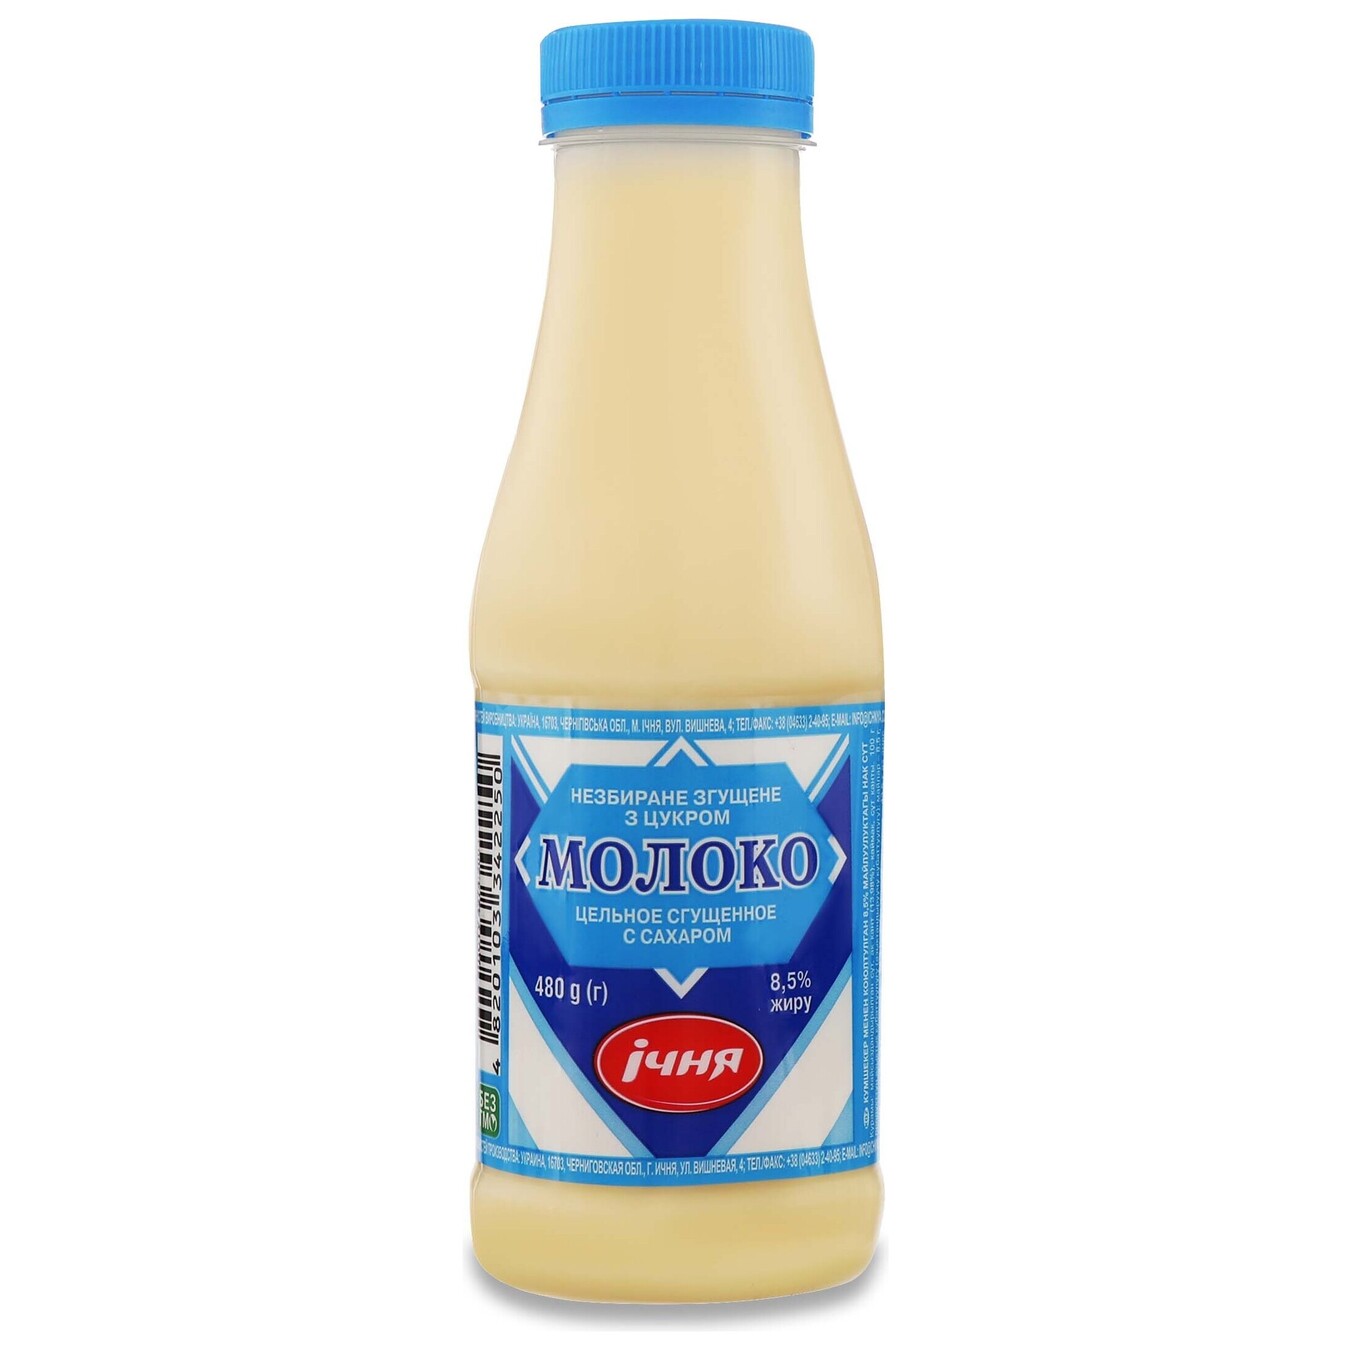 Ichnya Condensed milk 8.5% 480g